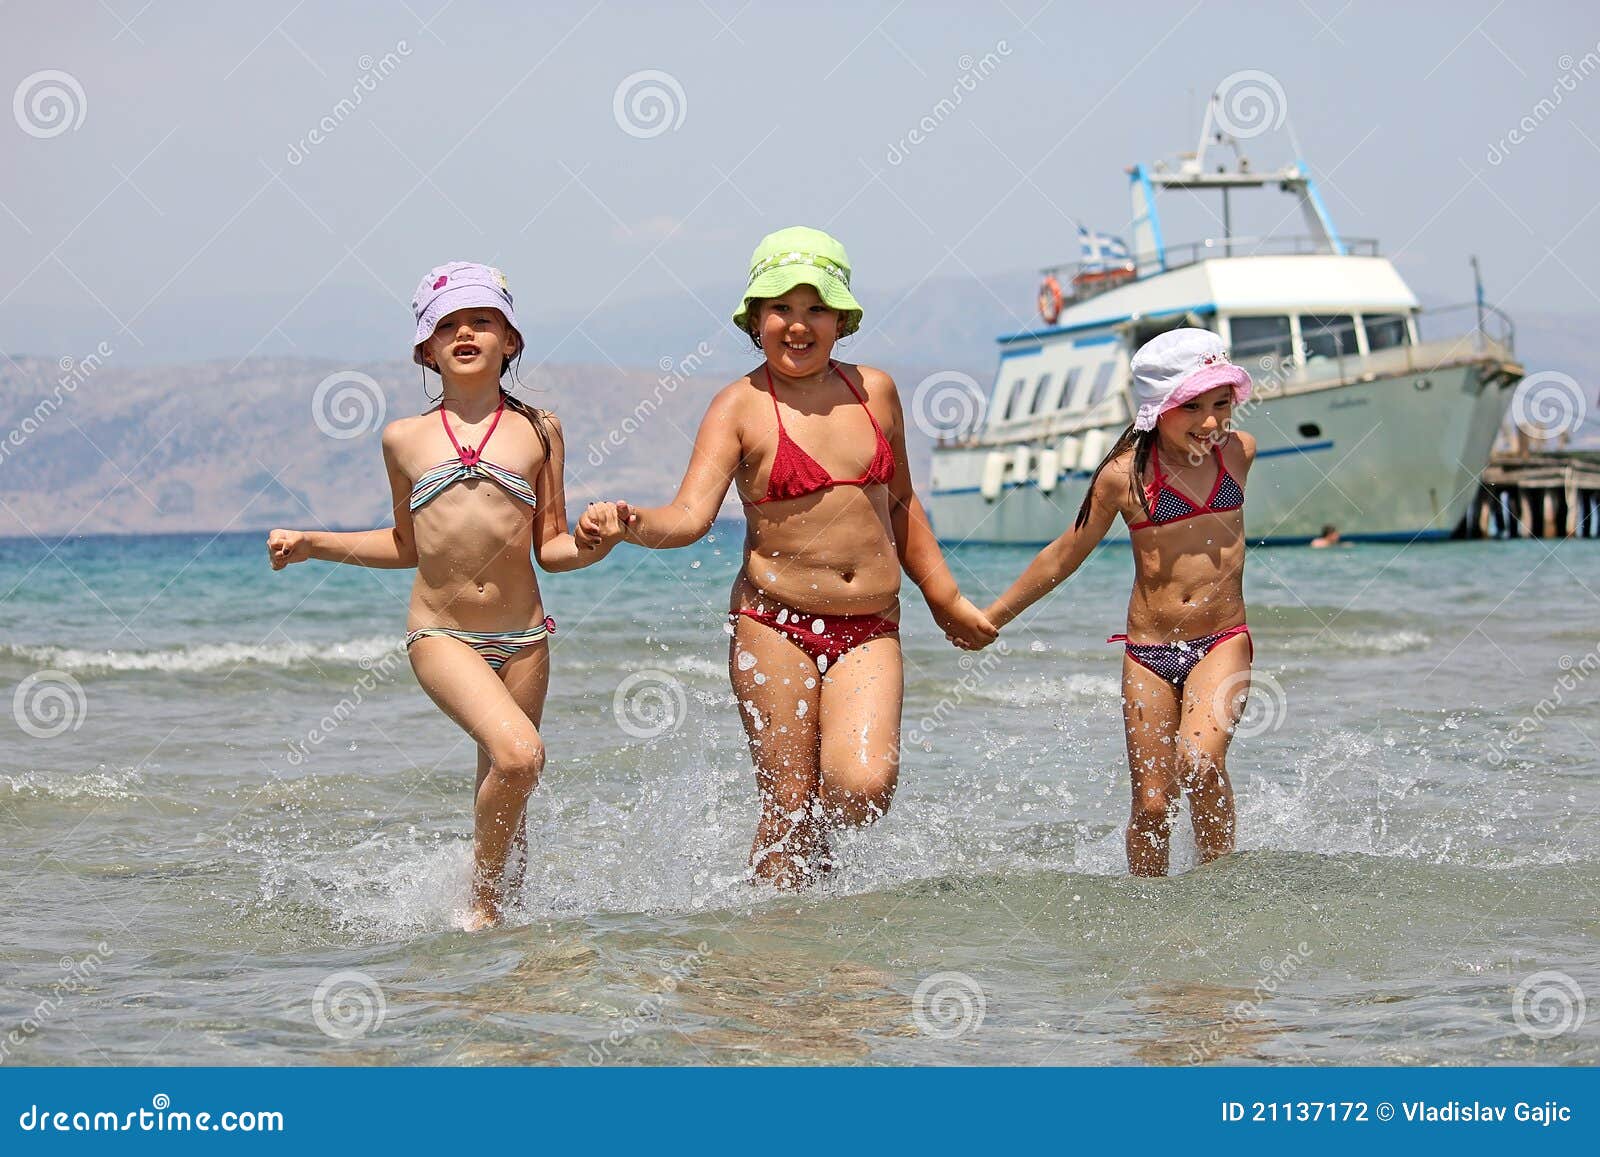 фото дети на голом пляже фото 103